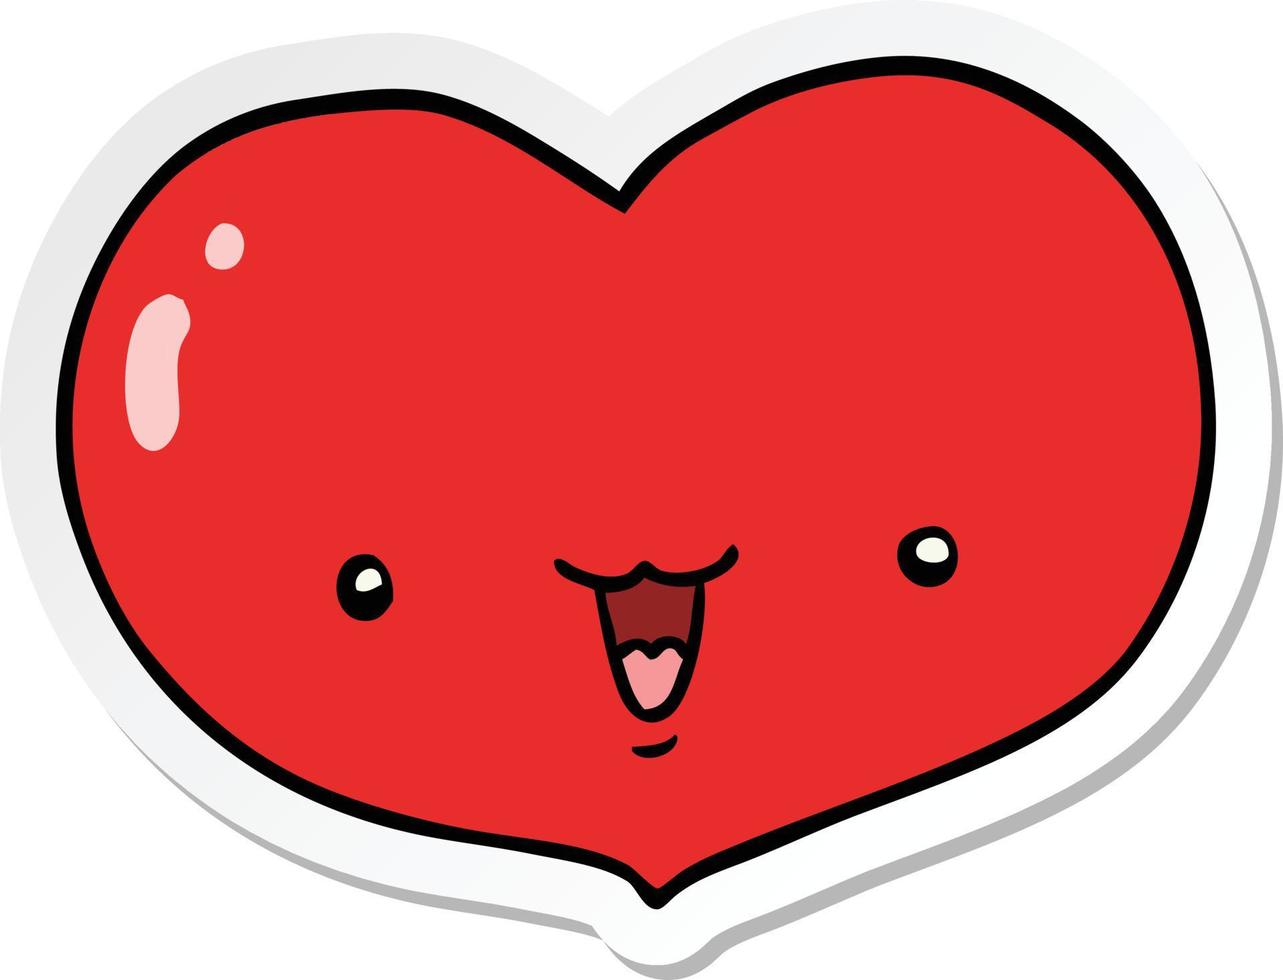 sticker of a cartoon love heart character vector